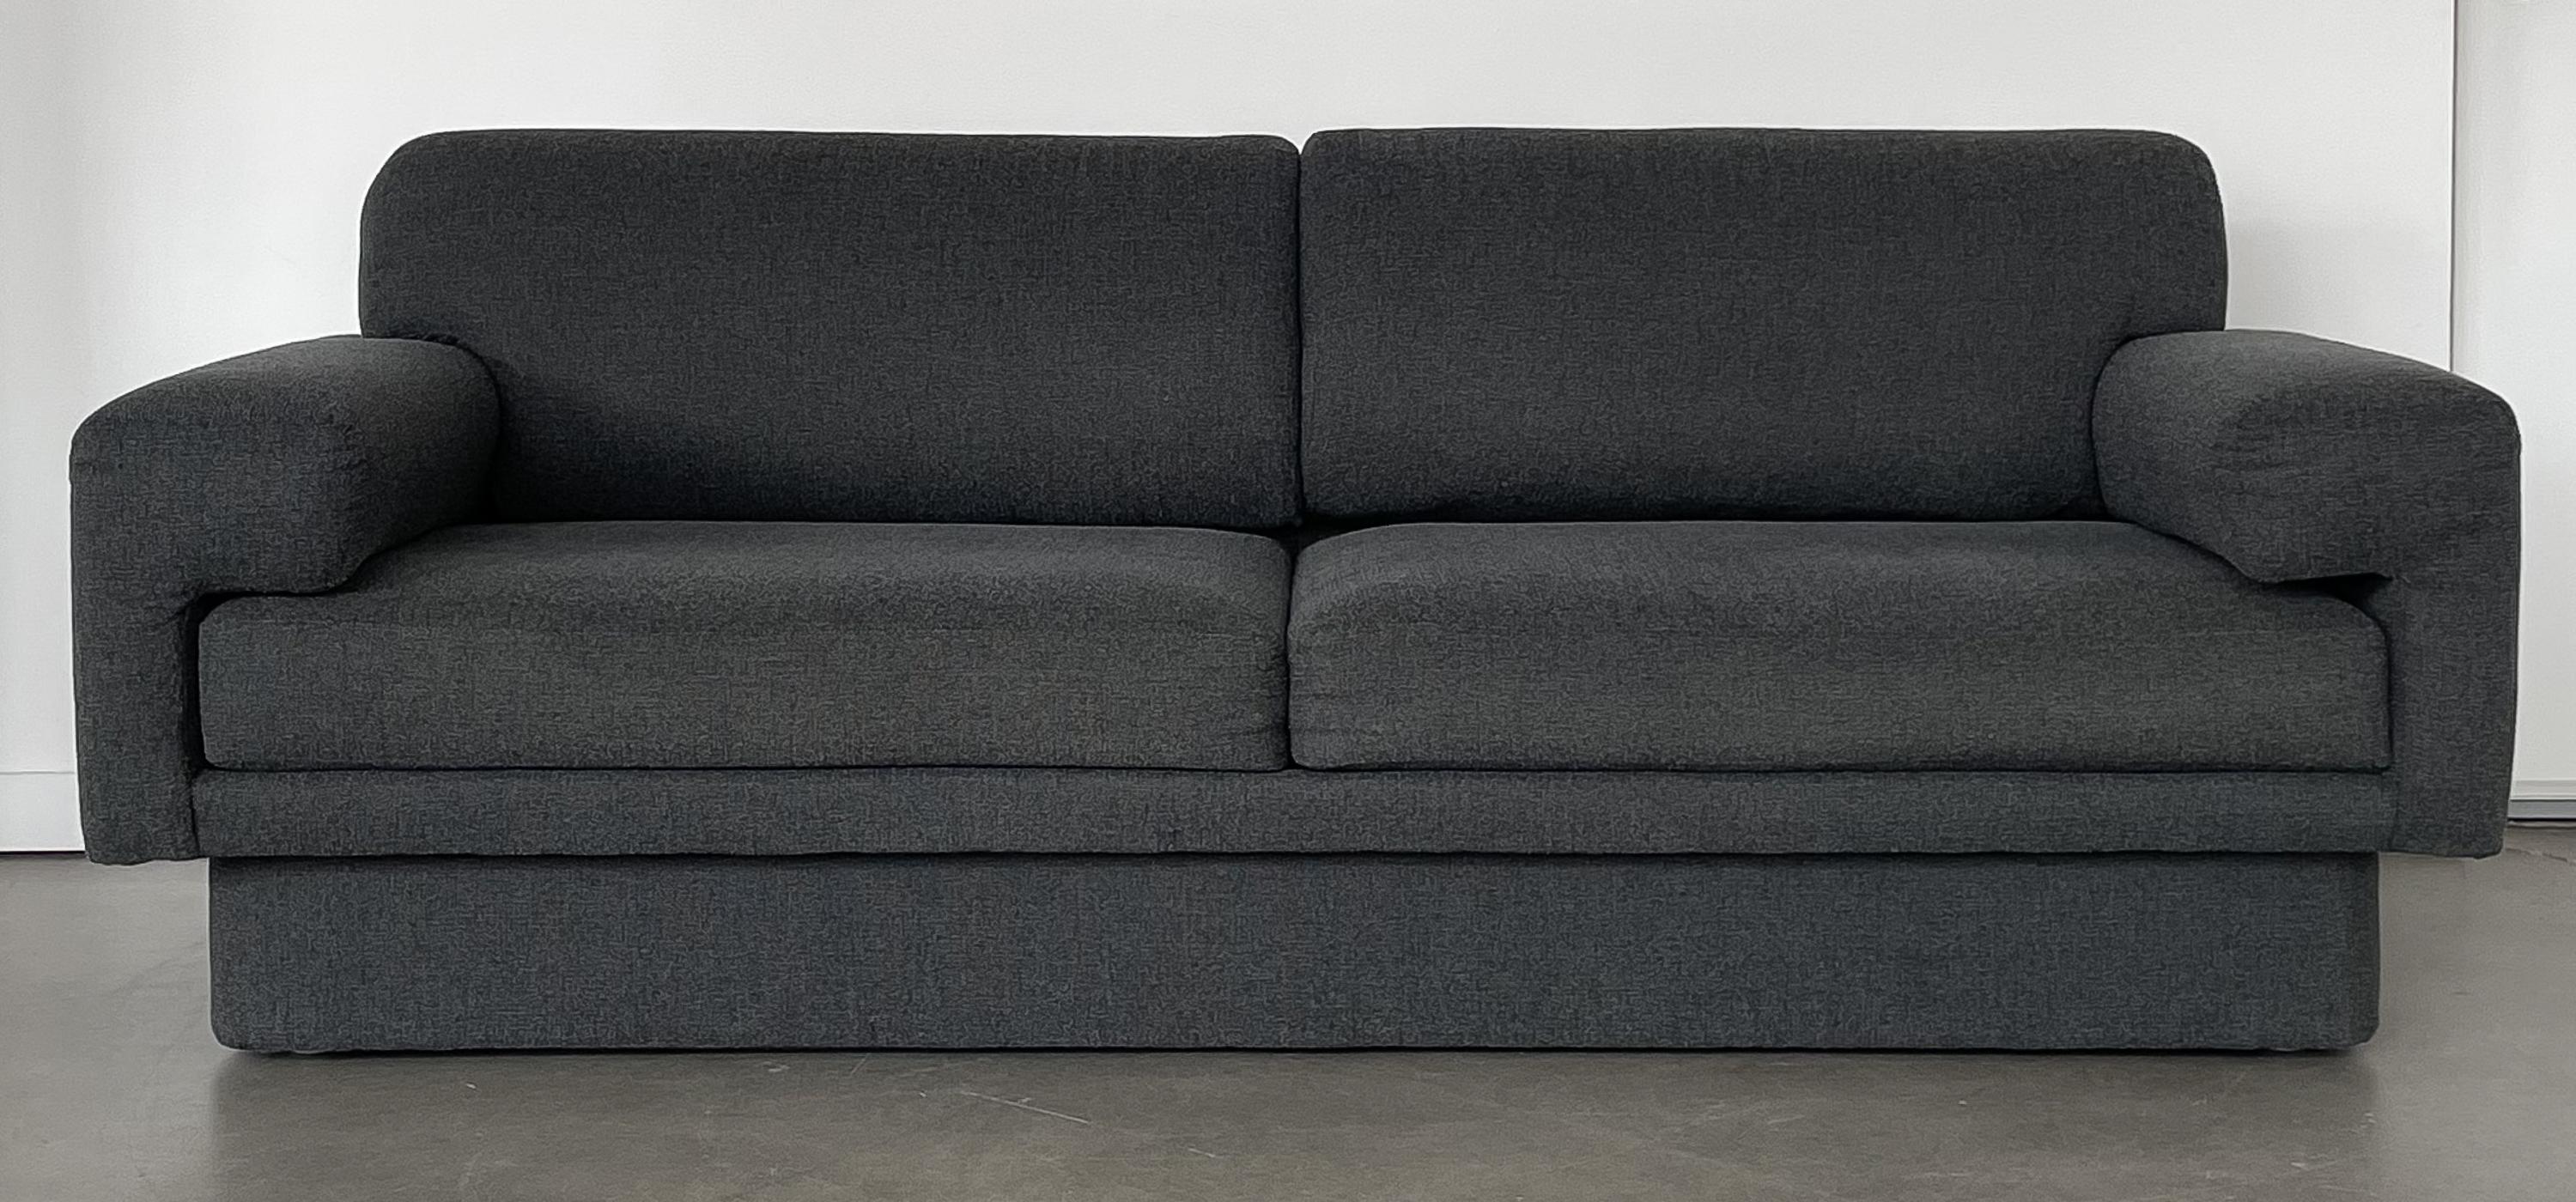 Mid-Century Modern Thayer Coggin Fully Upholstered Modernist Sofas